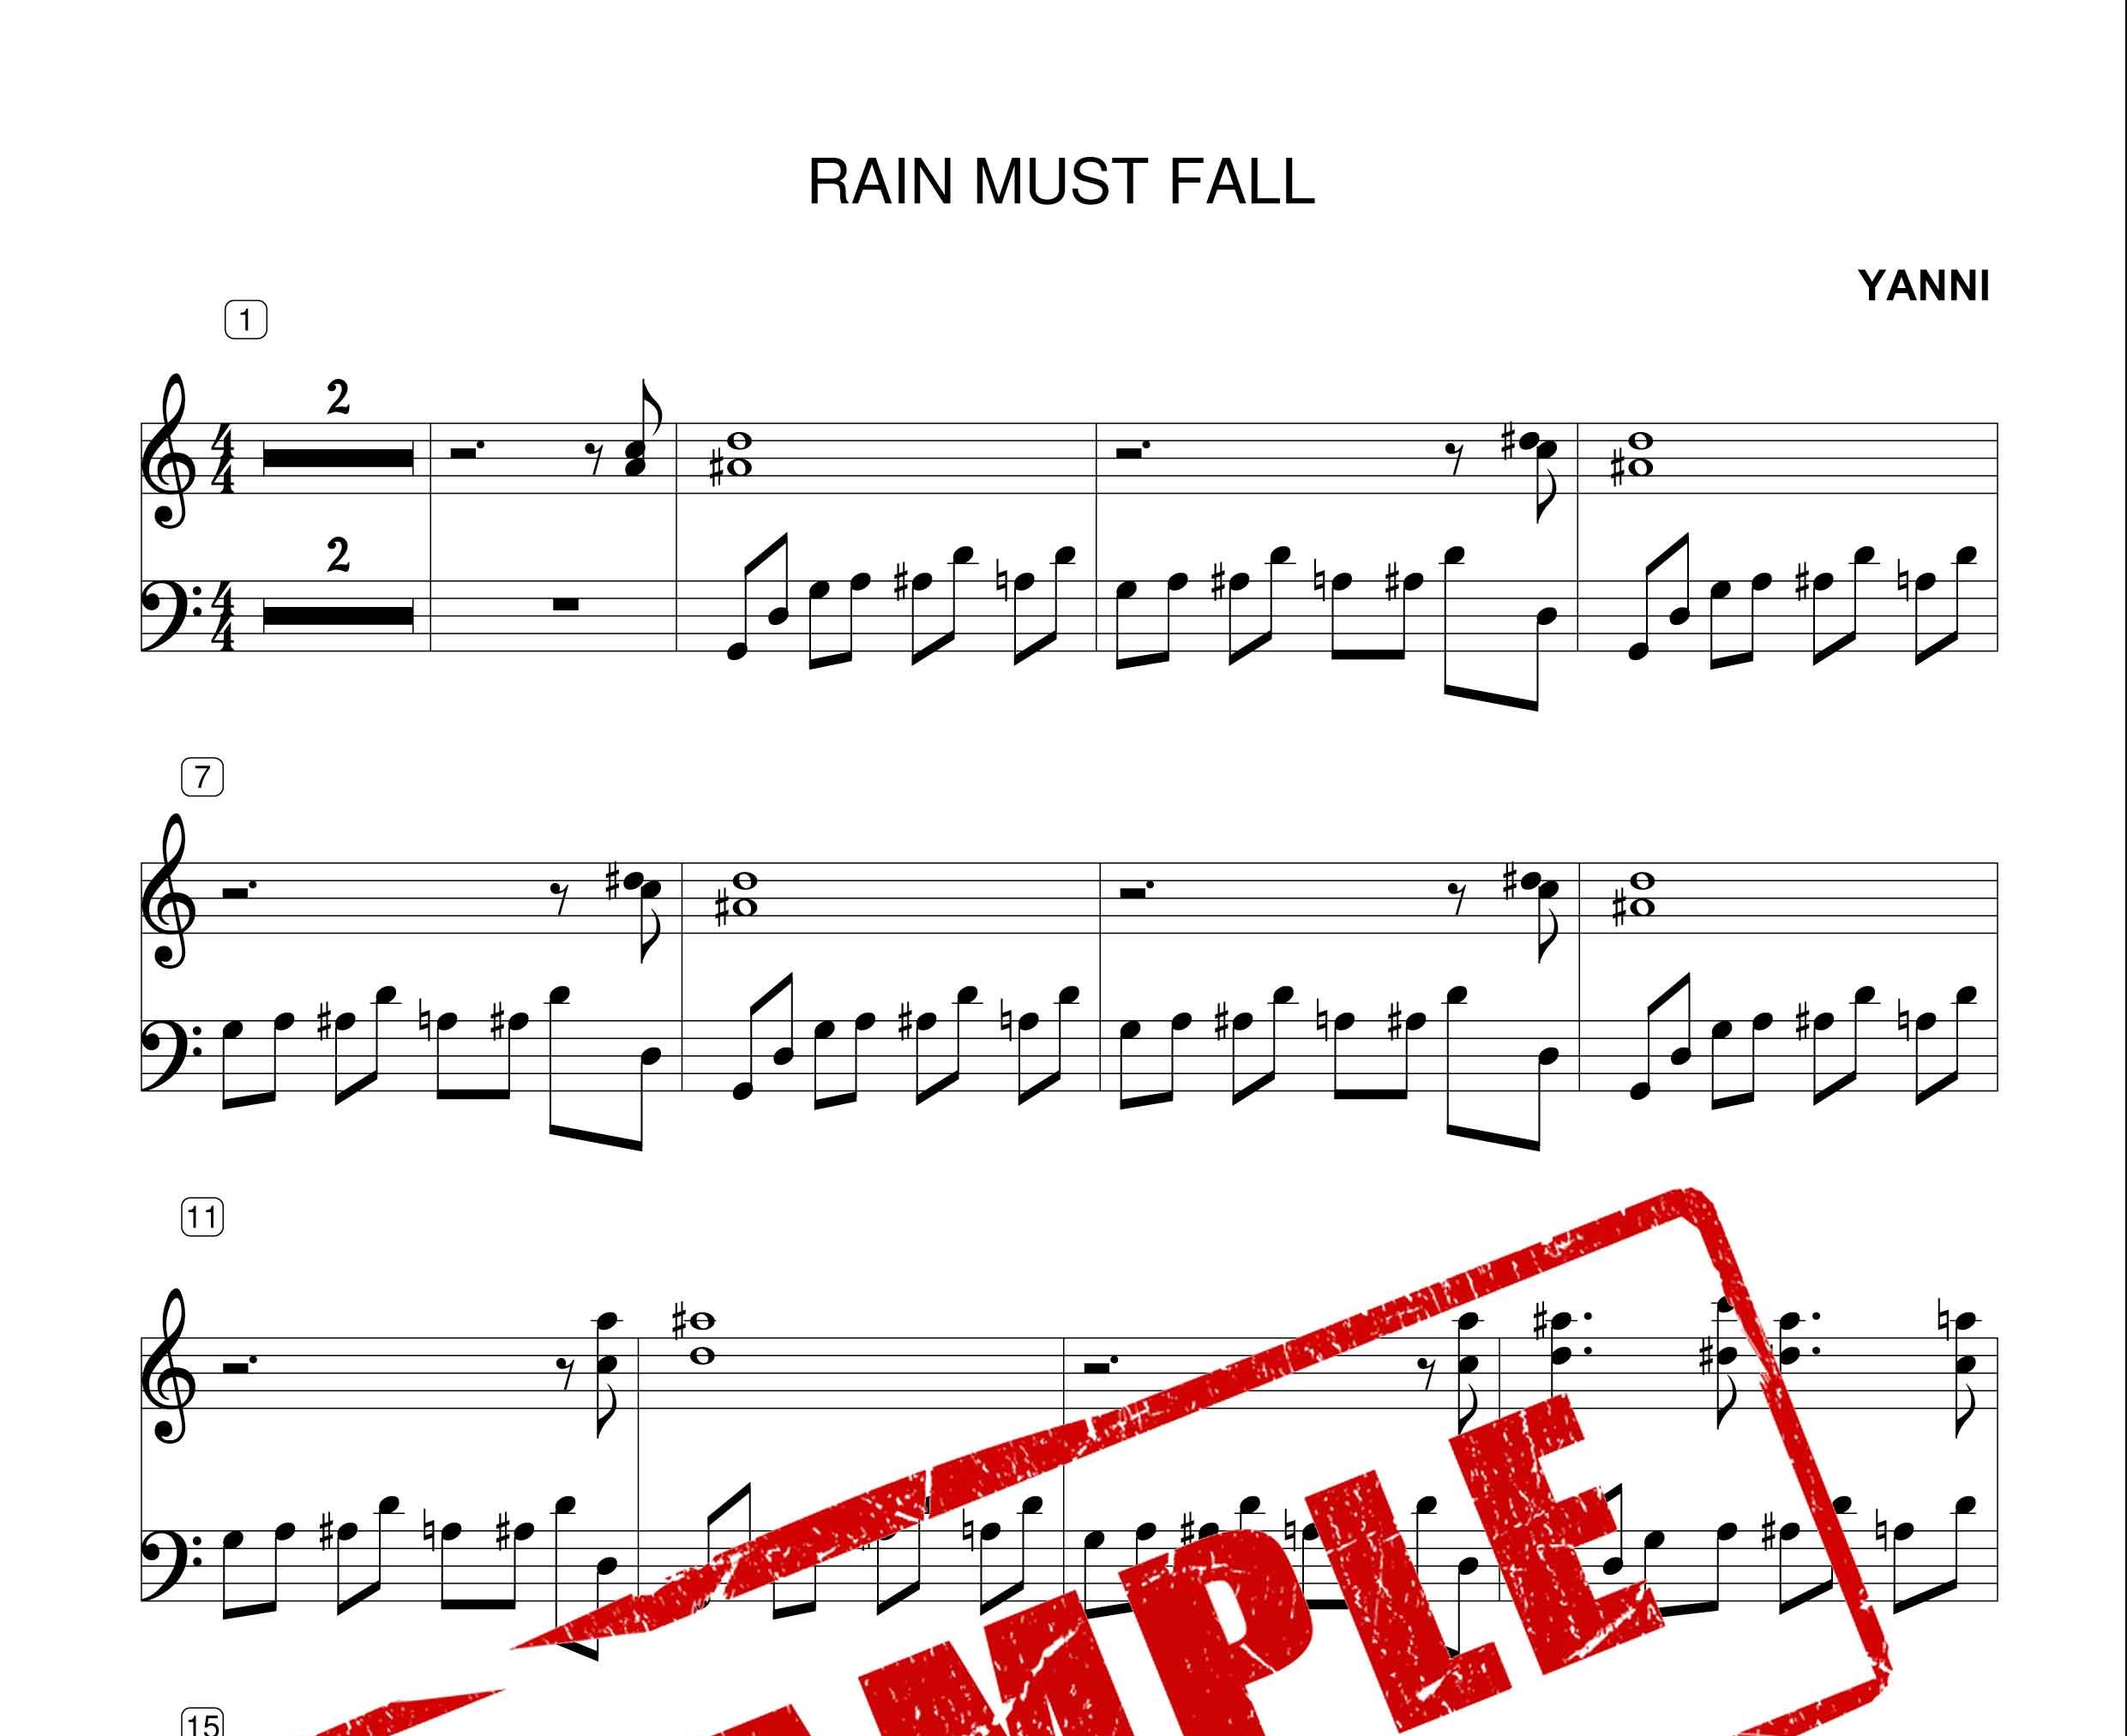 نت پیانوی قطعه RAIN MUST FALL از یانی